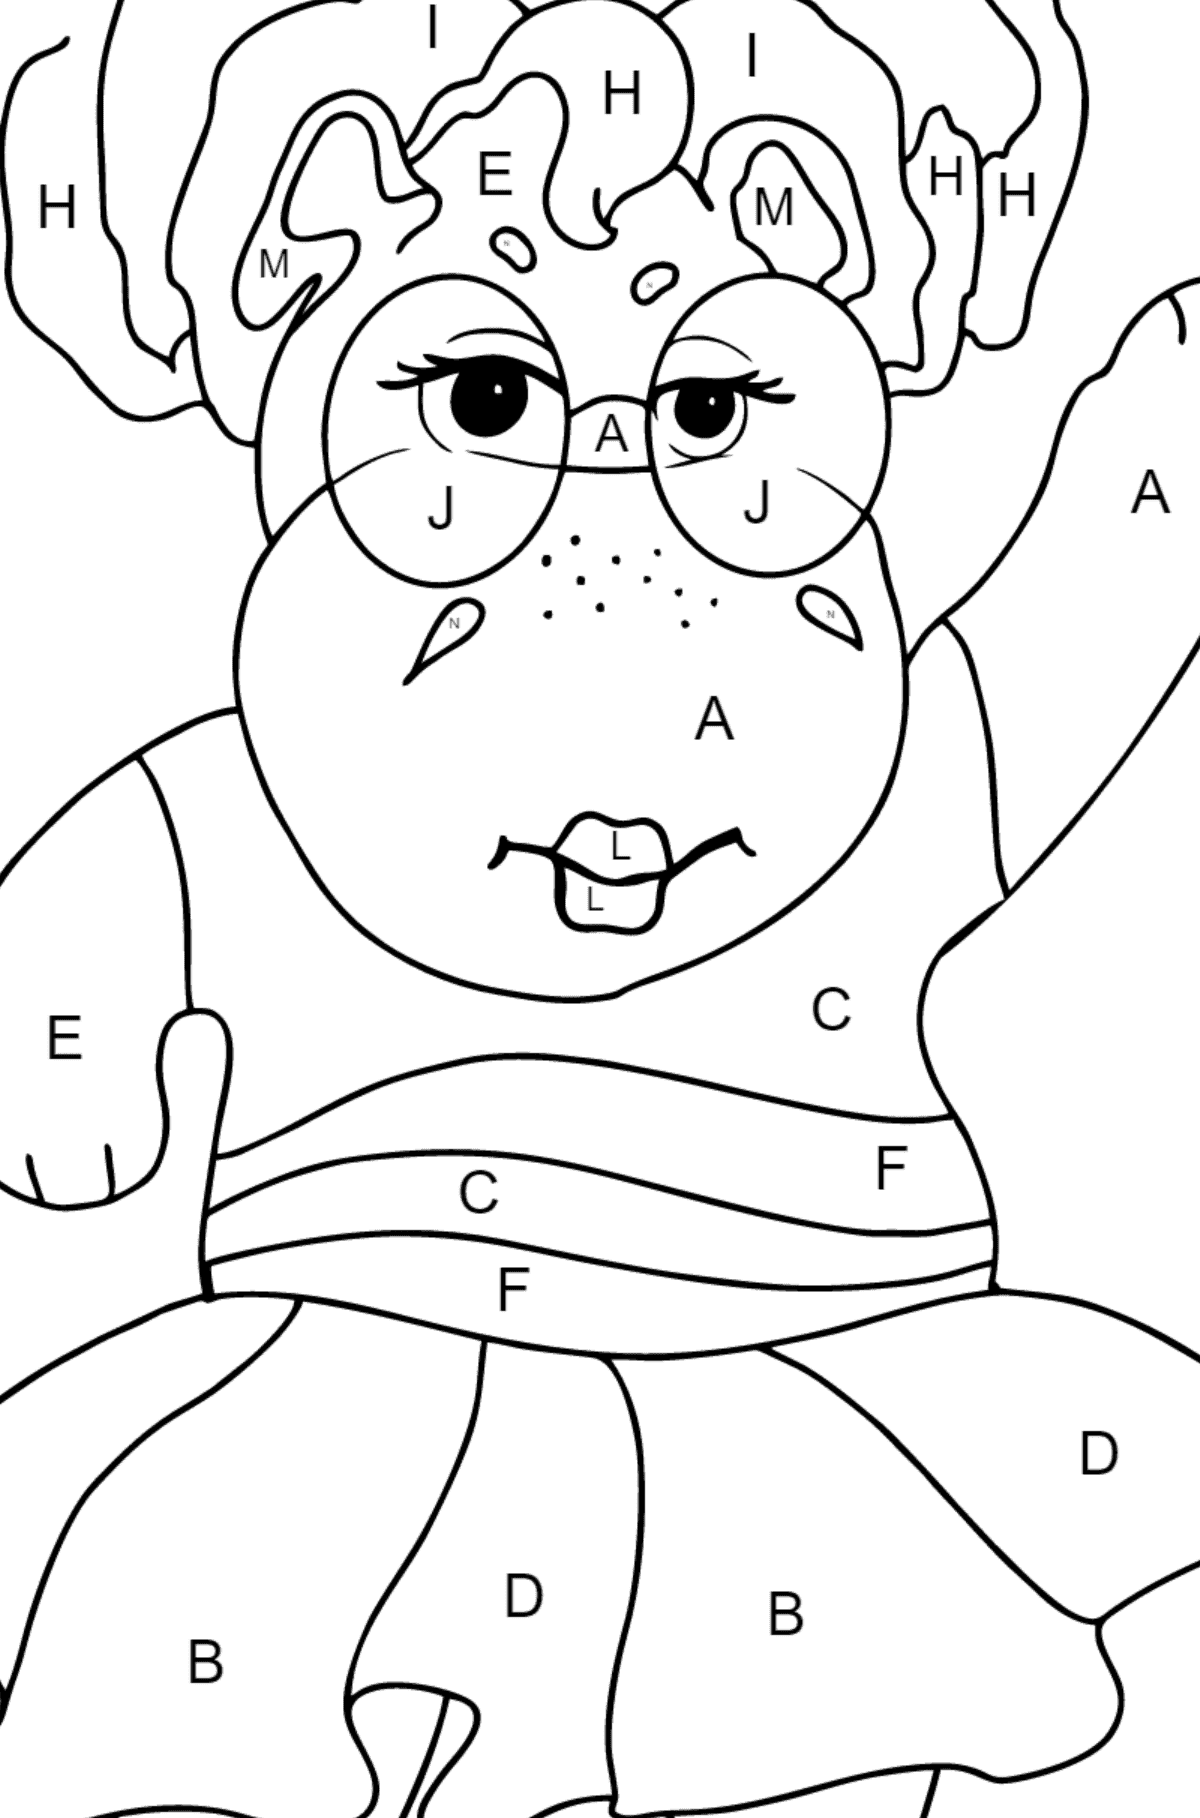 Coloriage Hippopotame dansant - Coloriage par Lettres pour les Enfants